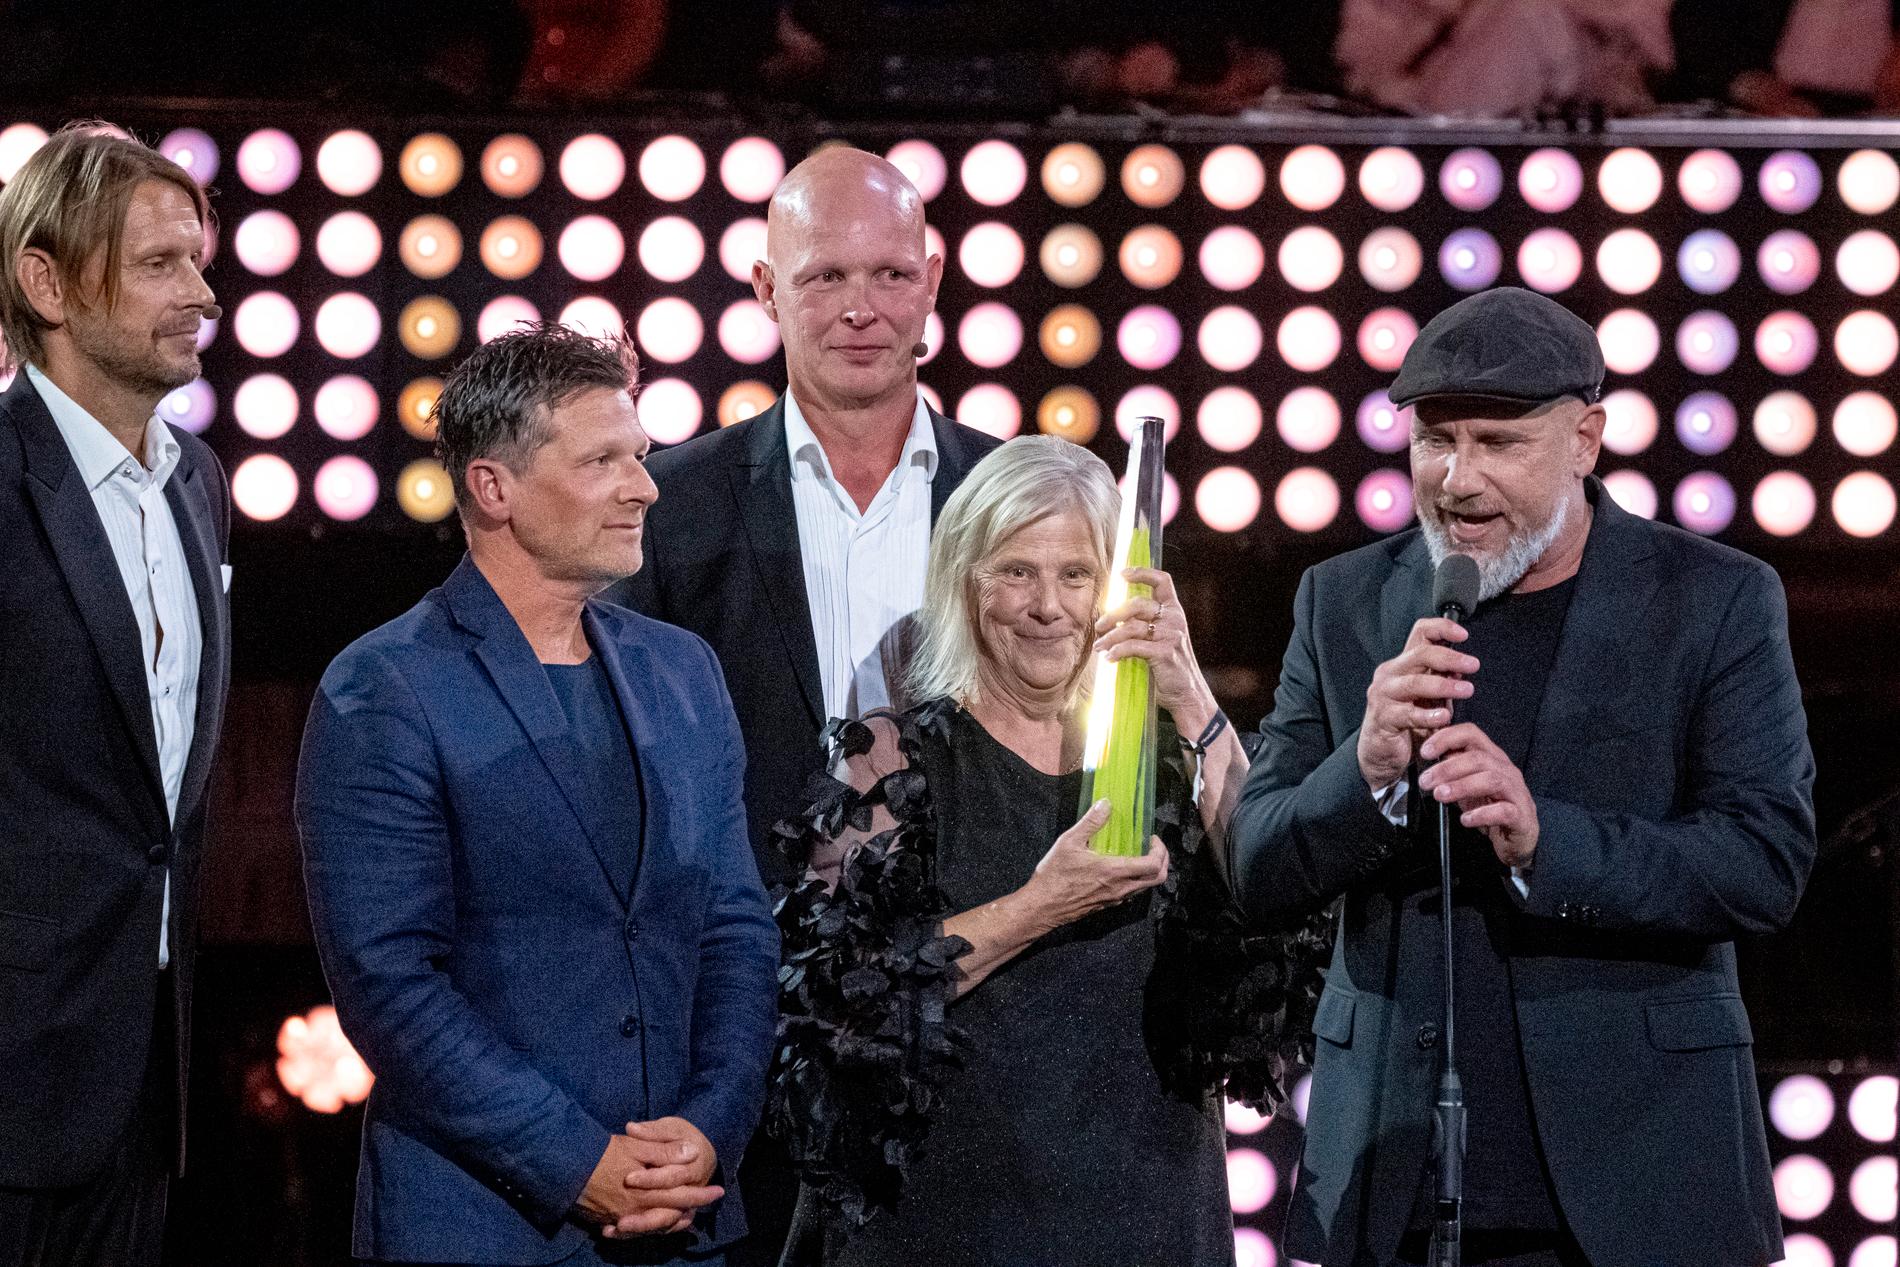 Irma och Marko ”Markoolio” Lehtosalo vann årets bästa realityserie på Kristallen.